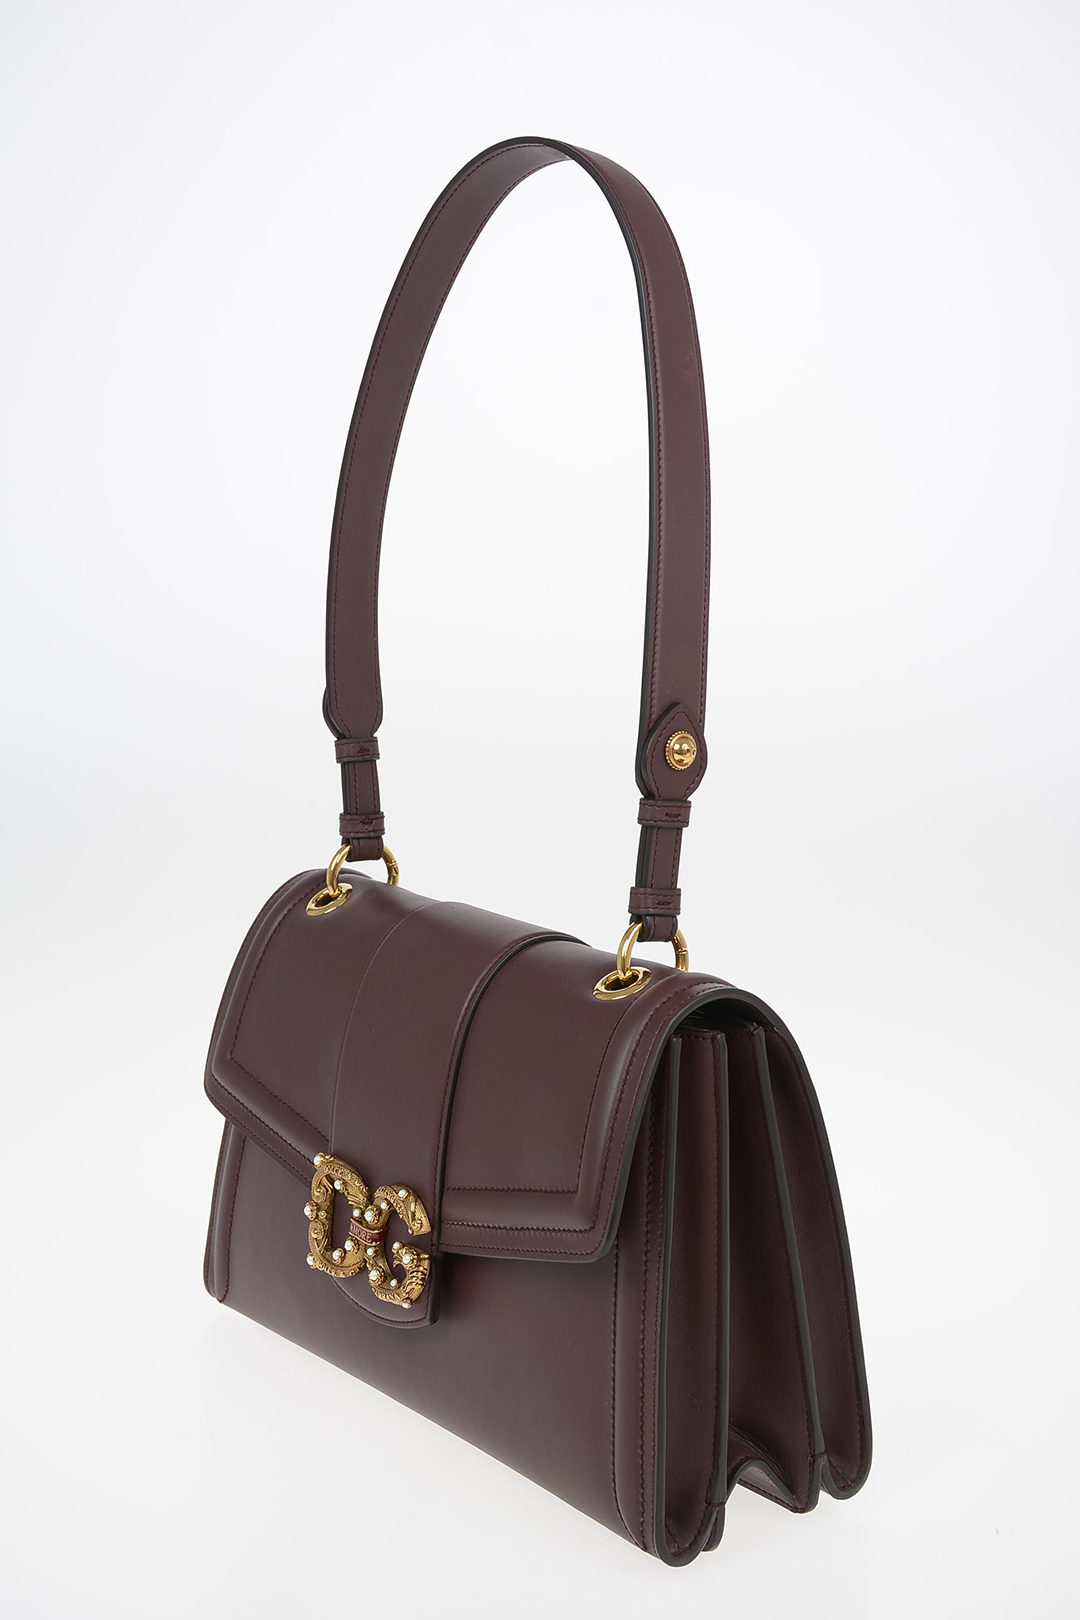 Dolce & Gabbana Leather “DG AMORE” Shoulder bag women - Glamood Outlet